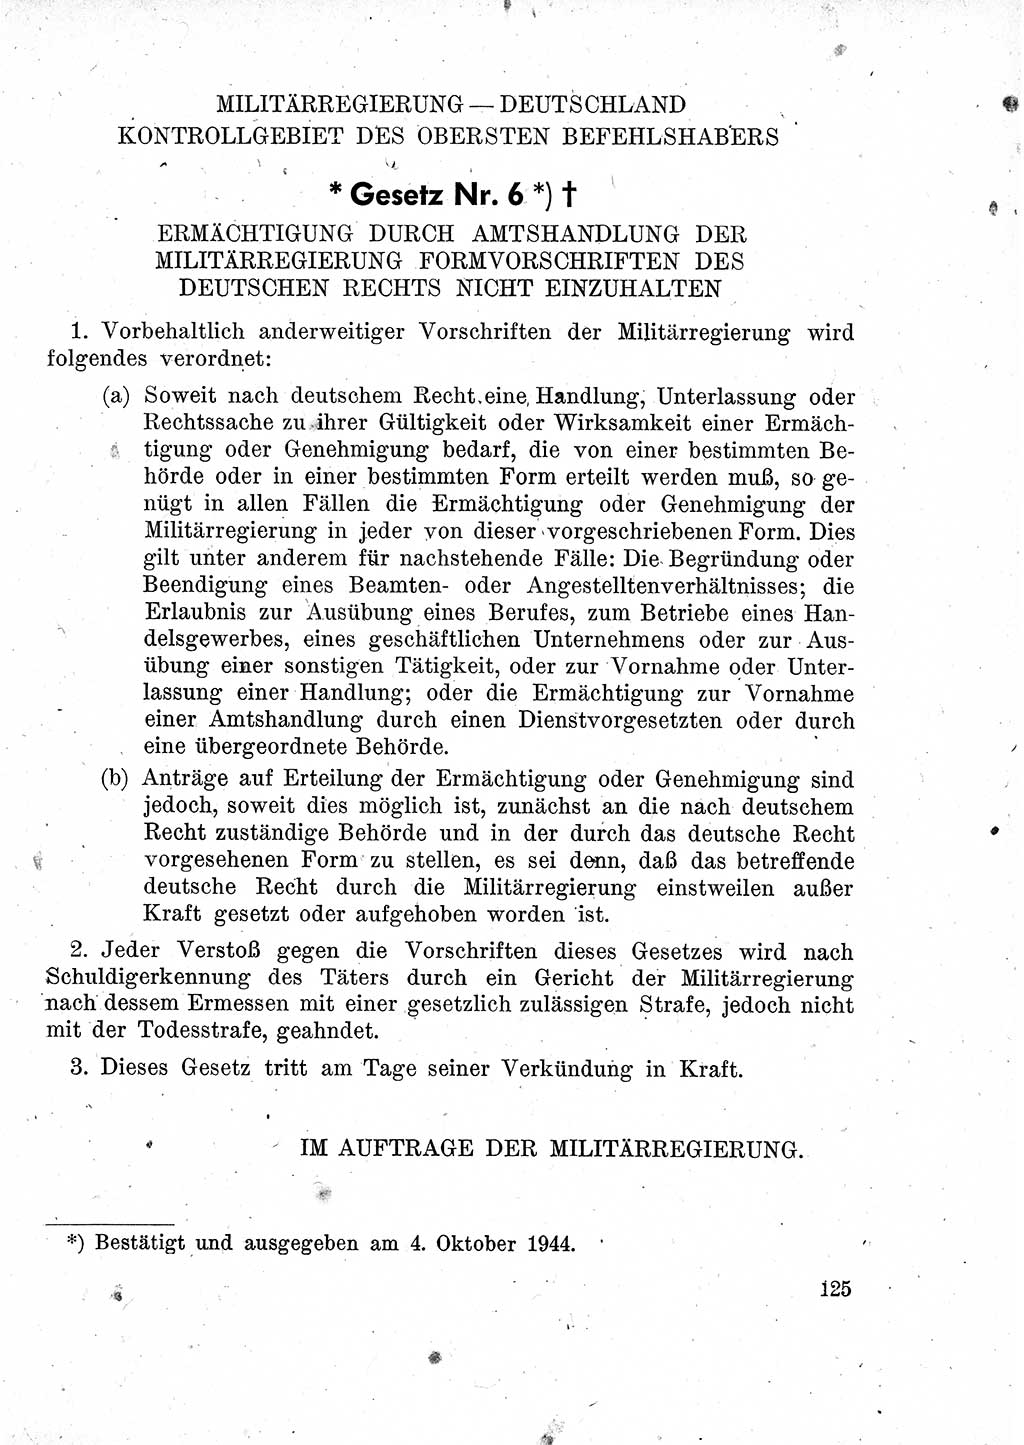 Das Recht der Besatzungsmacht (Deutschland), Proklamationen, Deklerationen, Verordnungen, Gesetze und Bekanntmachungen 1947, Seite 125 (R. Bes. Dtl. 1947, S. 125)